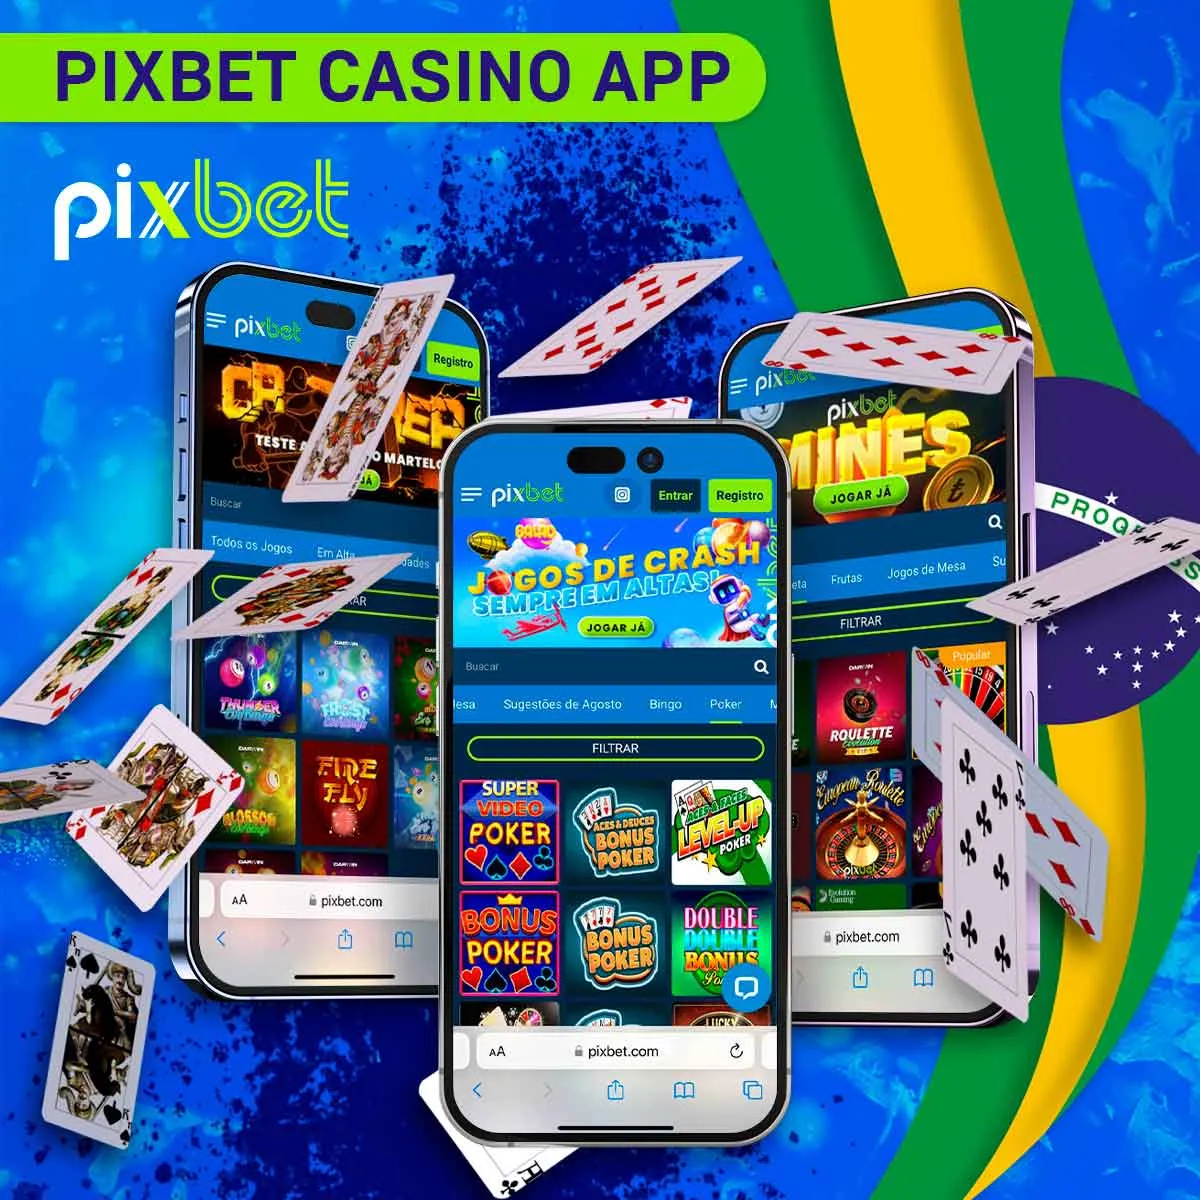 Cassino do aplicativo oficial Pixbet no Brasil?